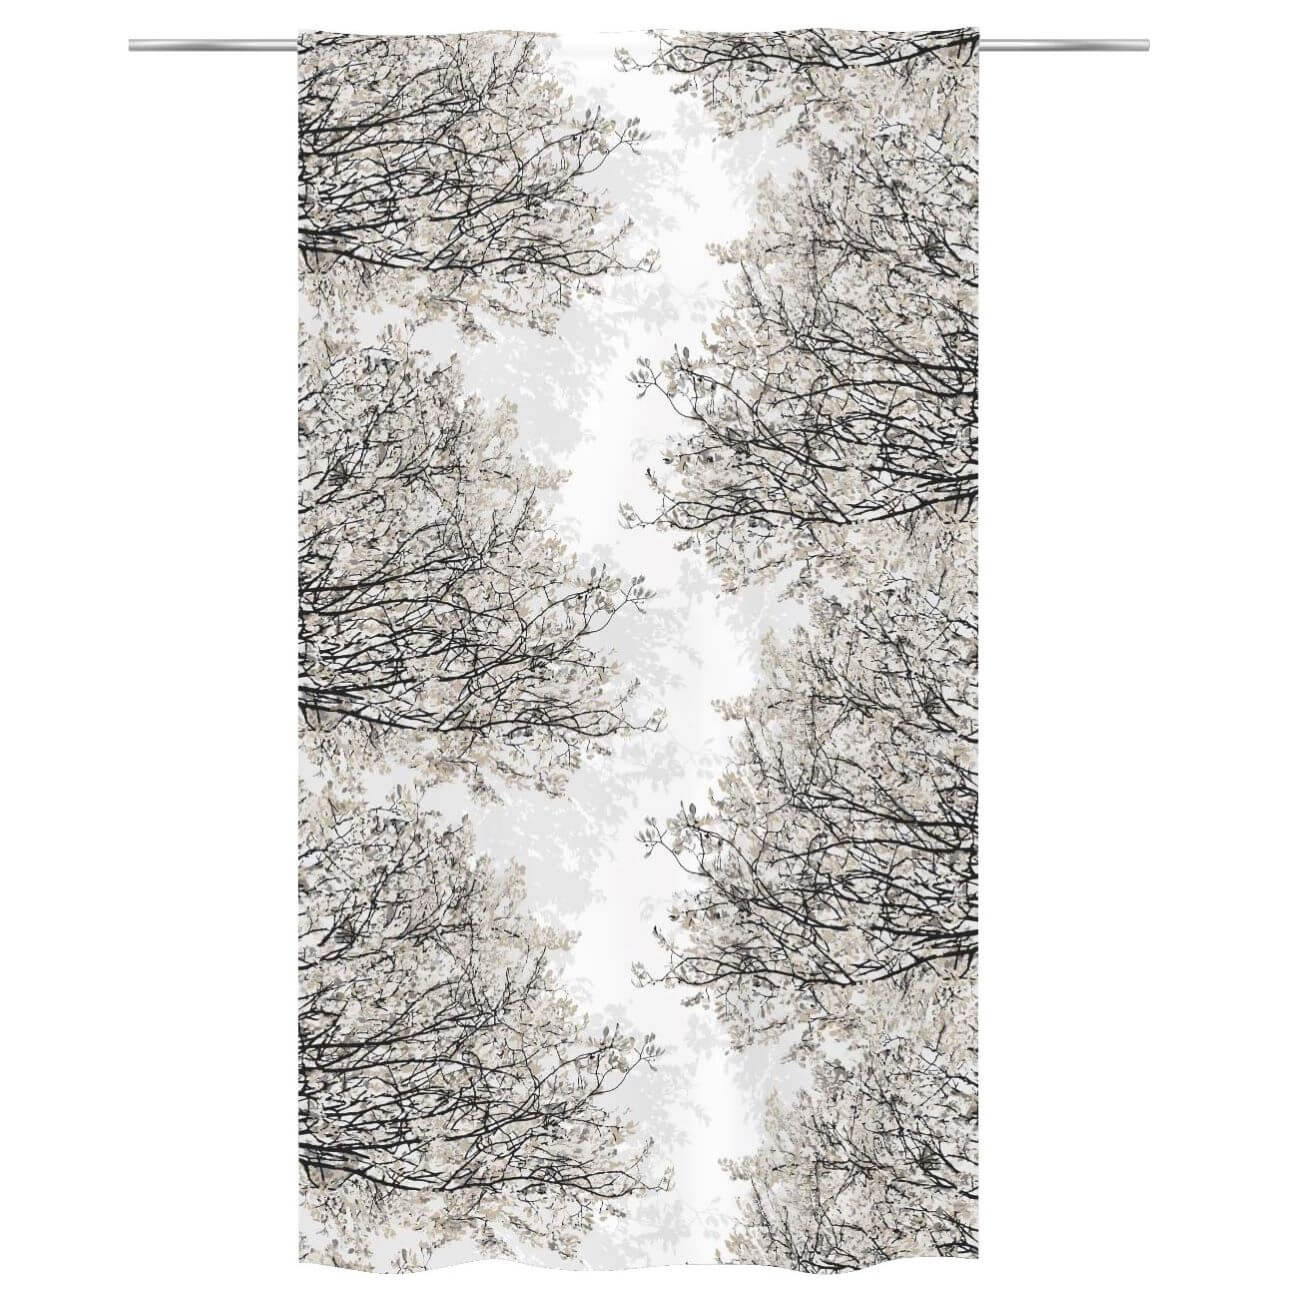 Zasłony bawełniane HAVINA beżowe. Na biały tle wzór w drobne gałęzie i liście drzewa w odcieniach koloru beżowego. Widok zasłony na drążku. Skandynawski design